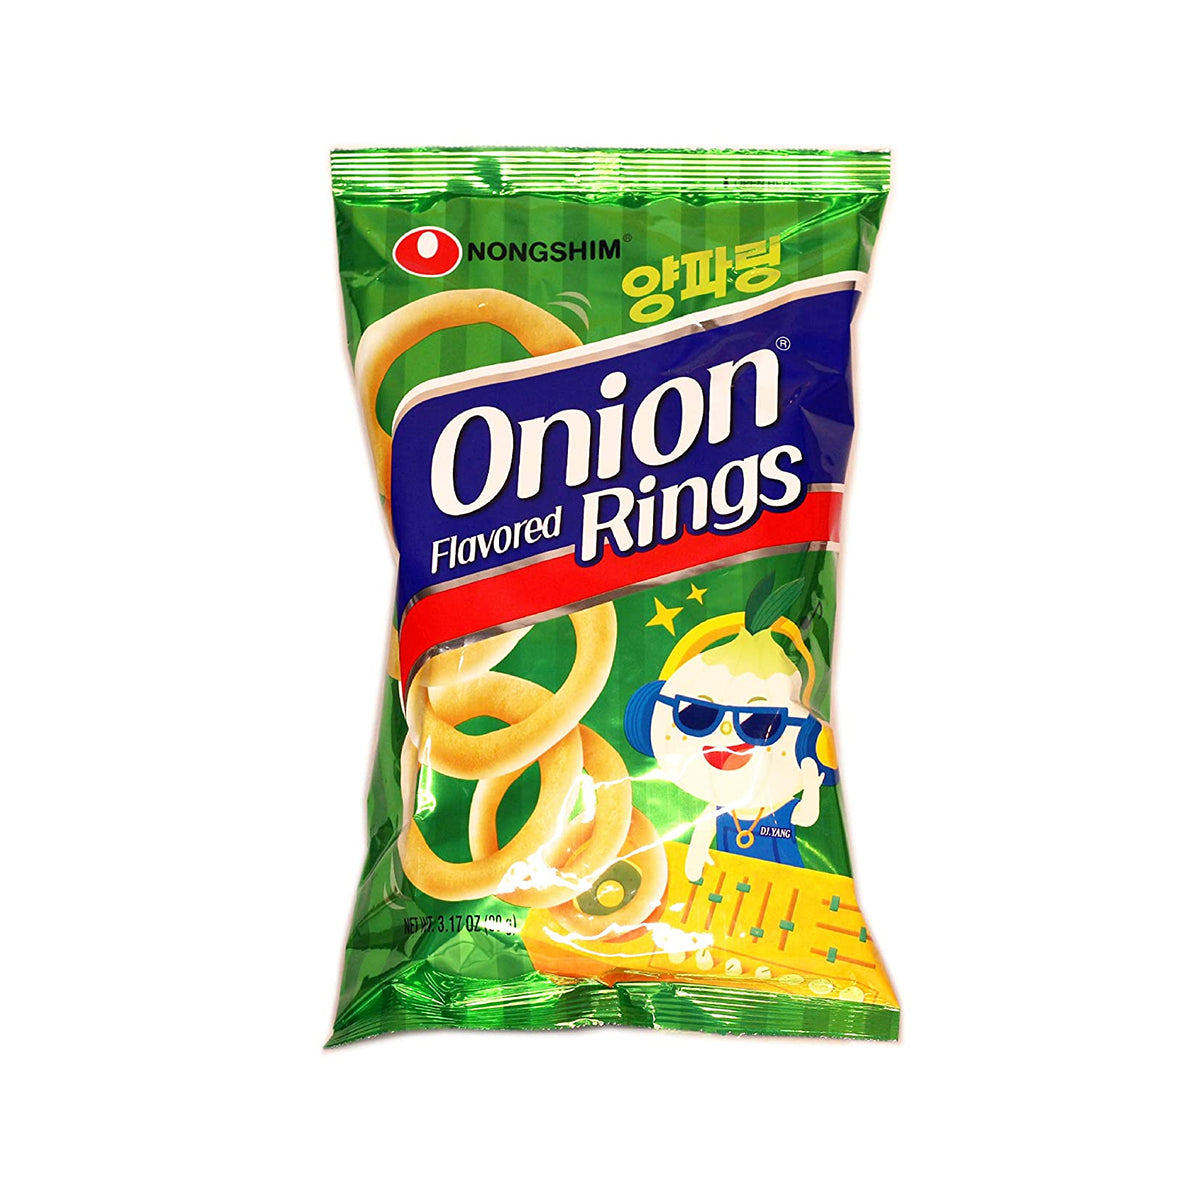 nongshim onion flavored rings - 3.17oz